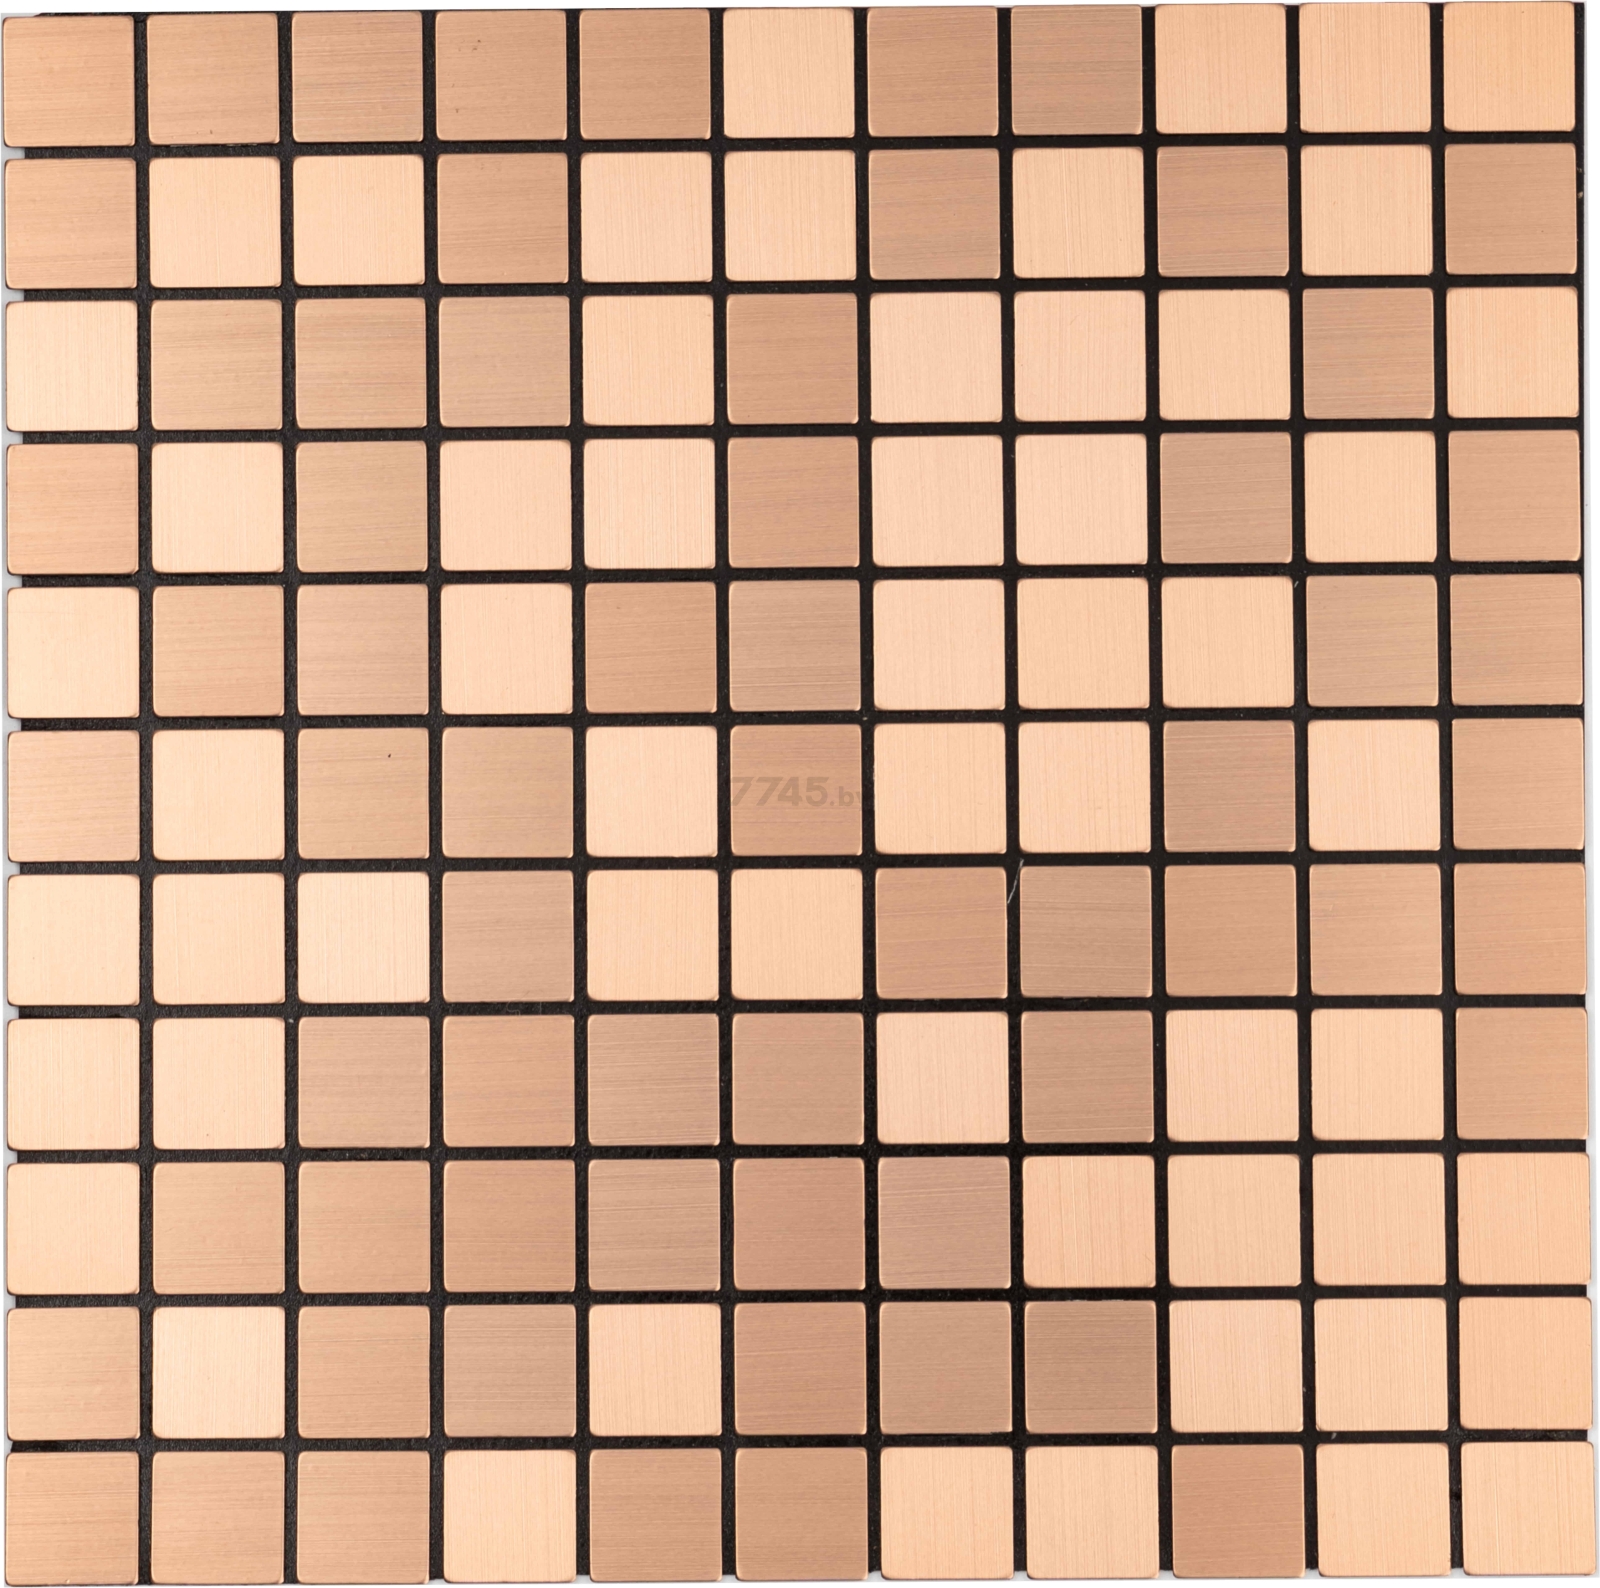 Панель ПВХ самоклеящаяся САМОКЛЕЙКИН Алюминий Бронзовая мозаика 300х300х3 мм (MA-B02)